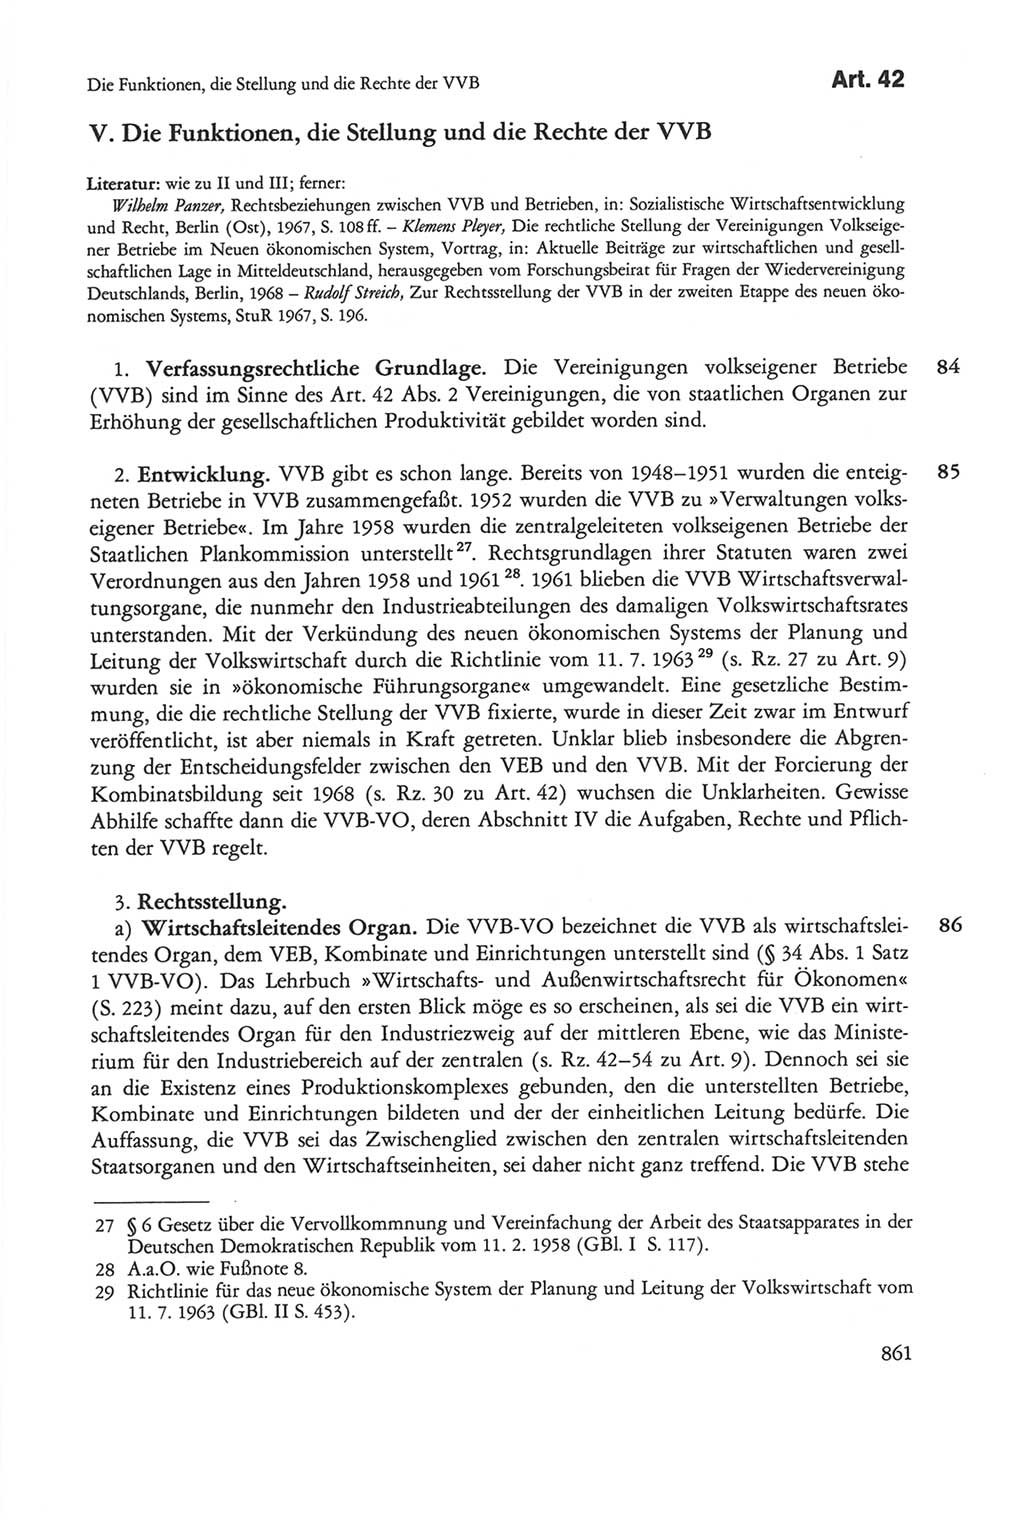 Die sozialistische Verfassung der Deutschen Demokratischen Republik (DDR), Kommentar mit einem Nachtrag 1997, Seite 861 (Soz. Verf. DDR Komm. Nachtr. 1997, S. 861)